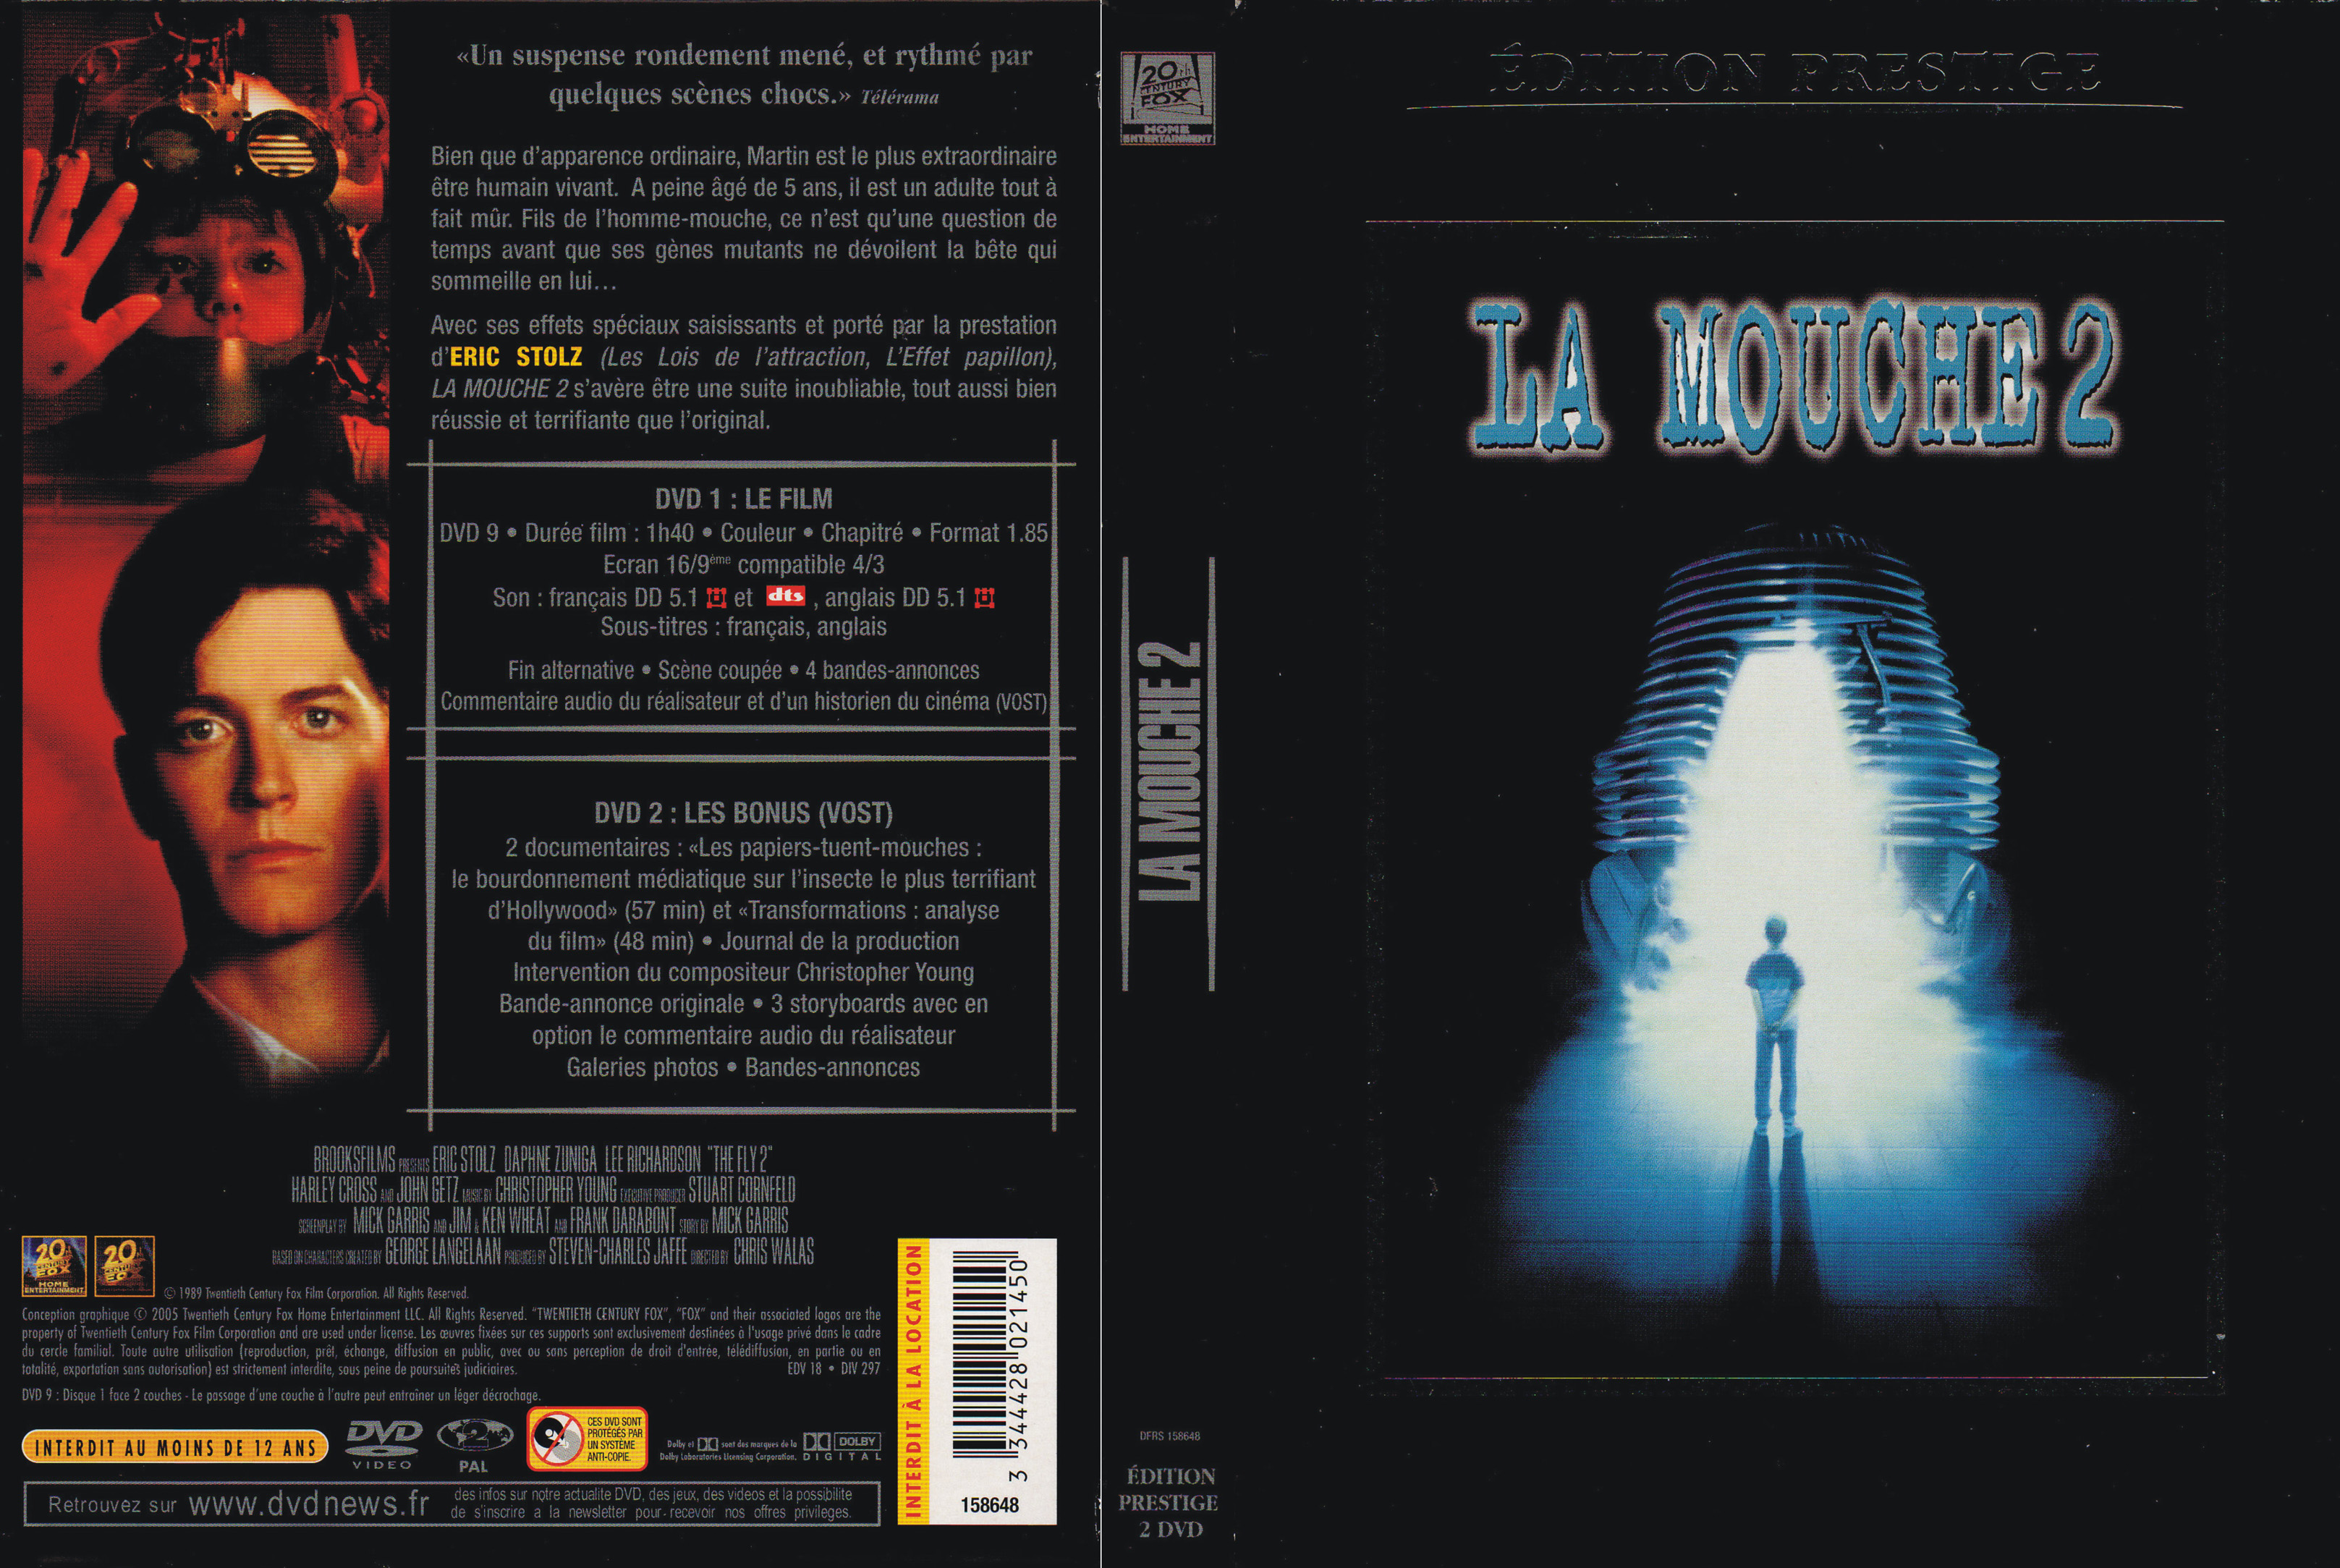 Jaquette DVD La mouche 2 v4